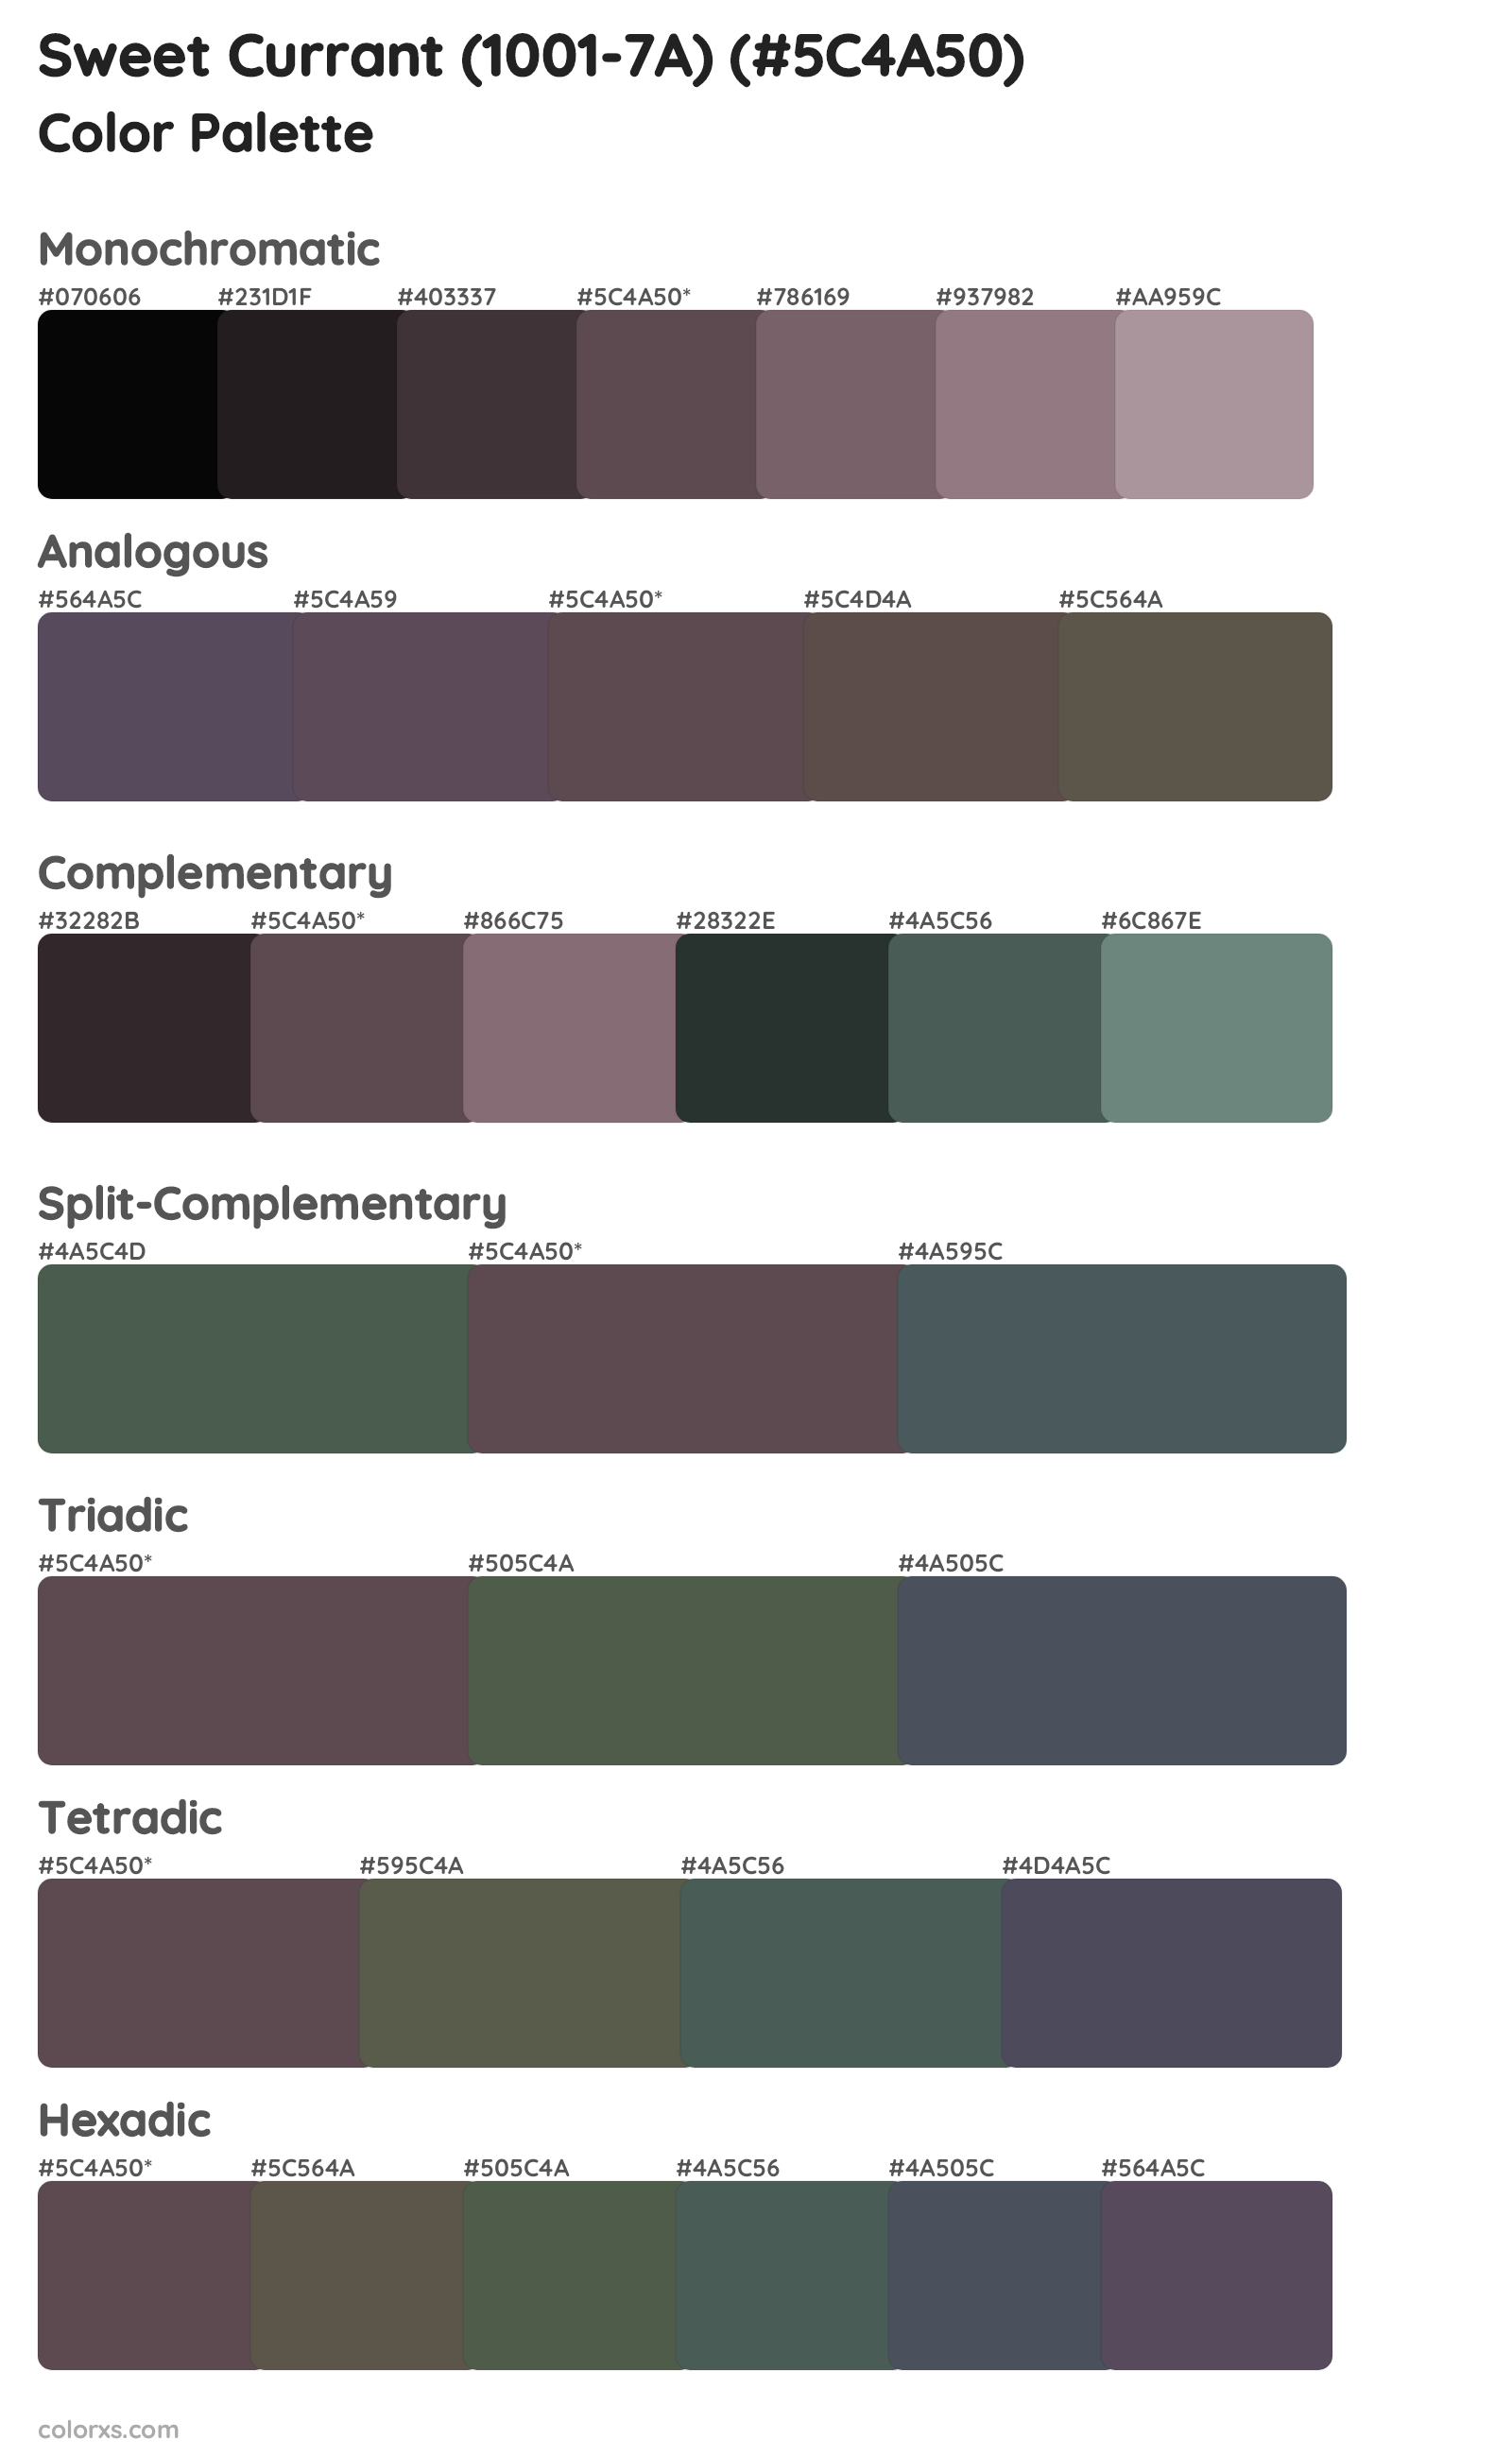 Sweet Currant (1001-7A) Color Scheme Palettes